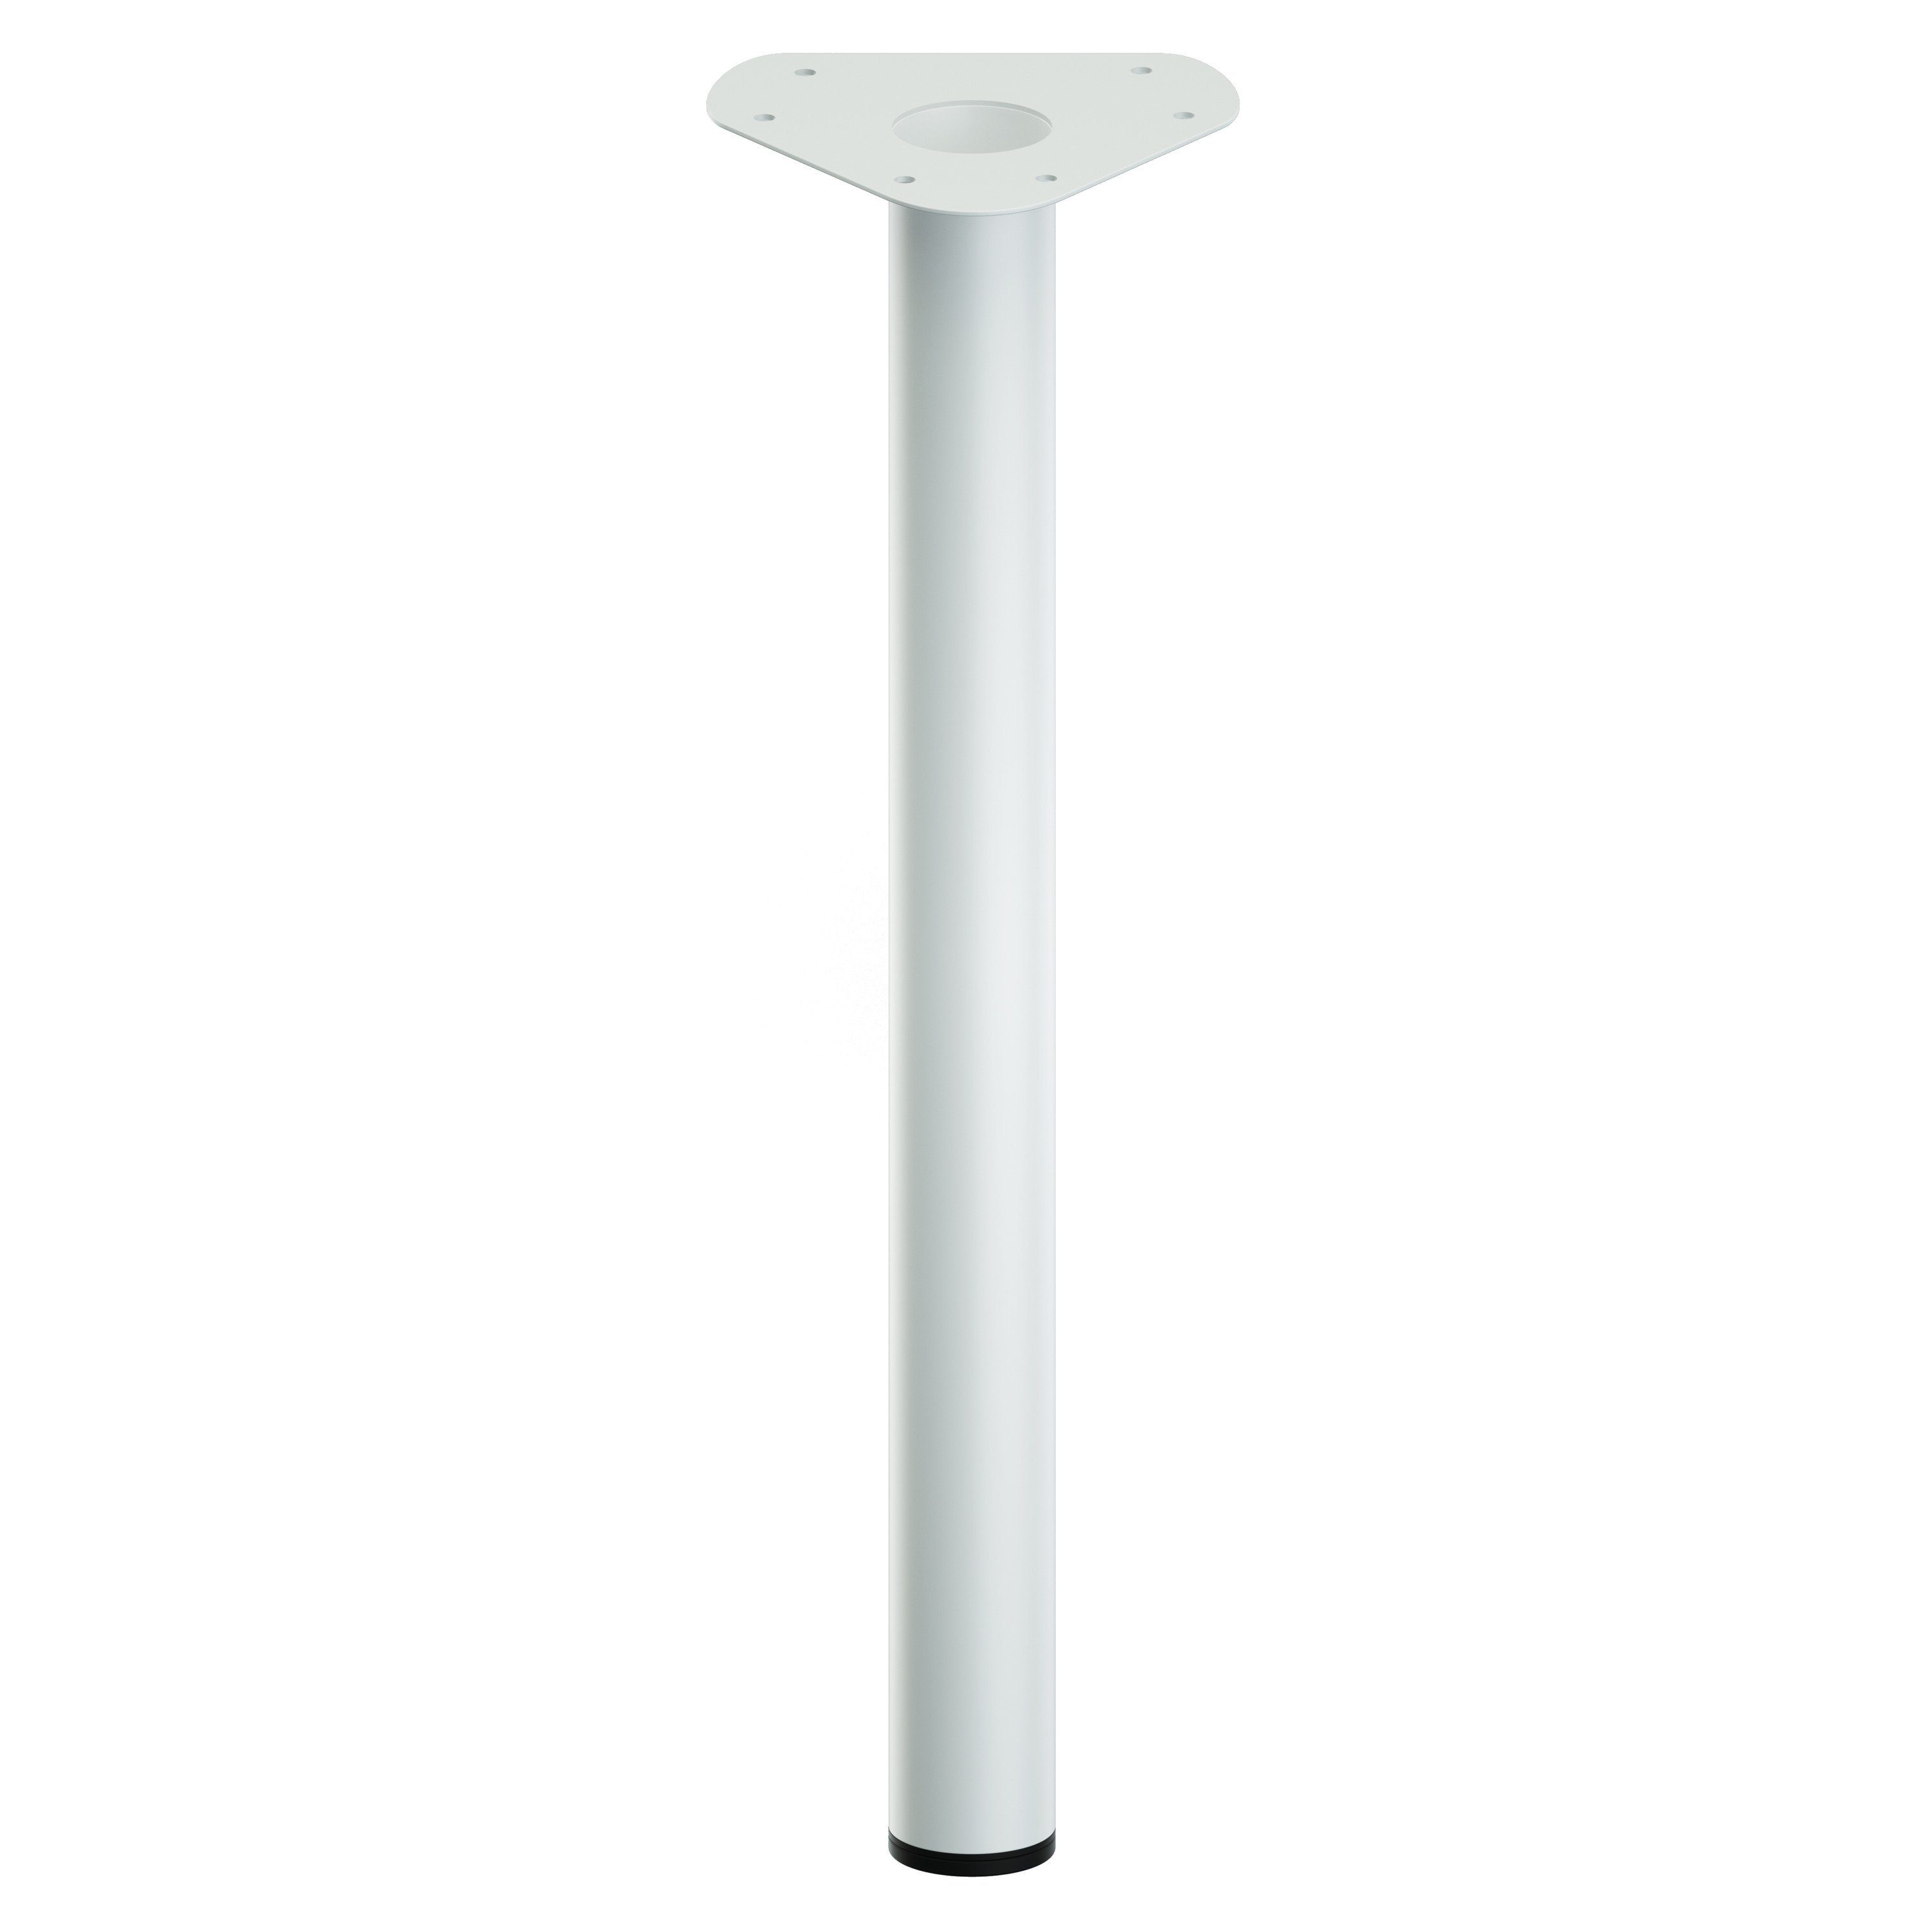 cm;Farbe:Silbermatt, - style Tischbein Tischfüße Möbelfüße - mm ib integrierten 60 Tischbein mit Ø Stellfuß Länge:20